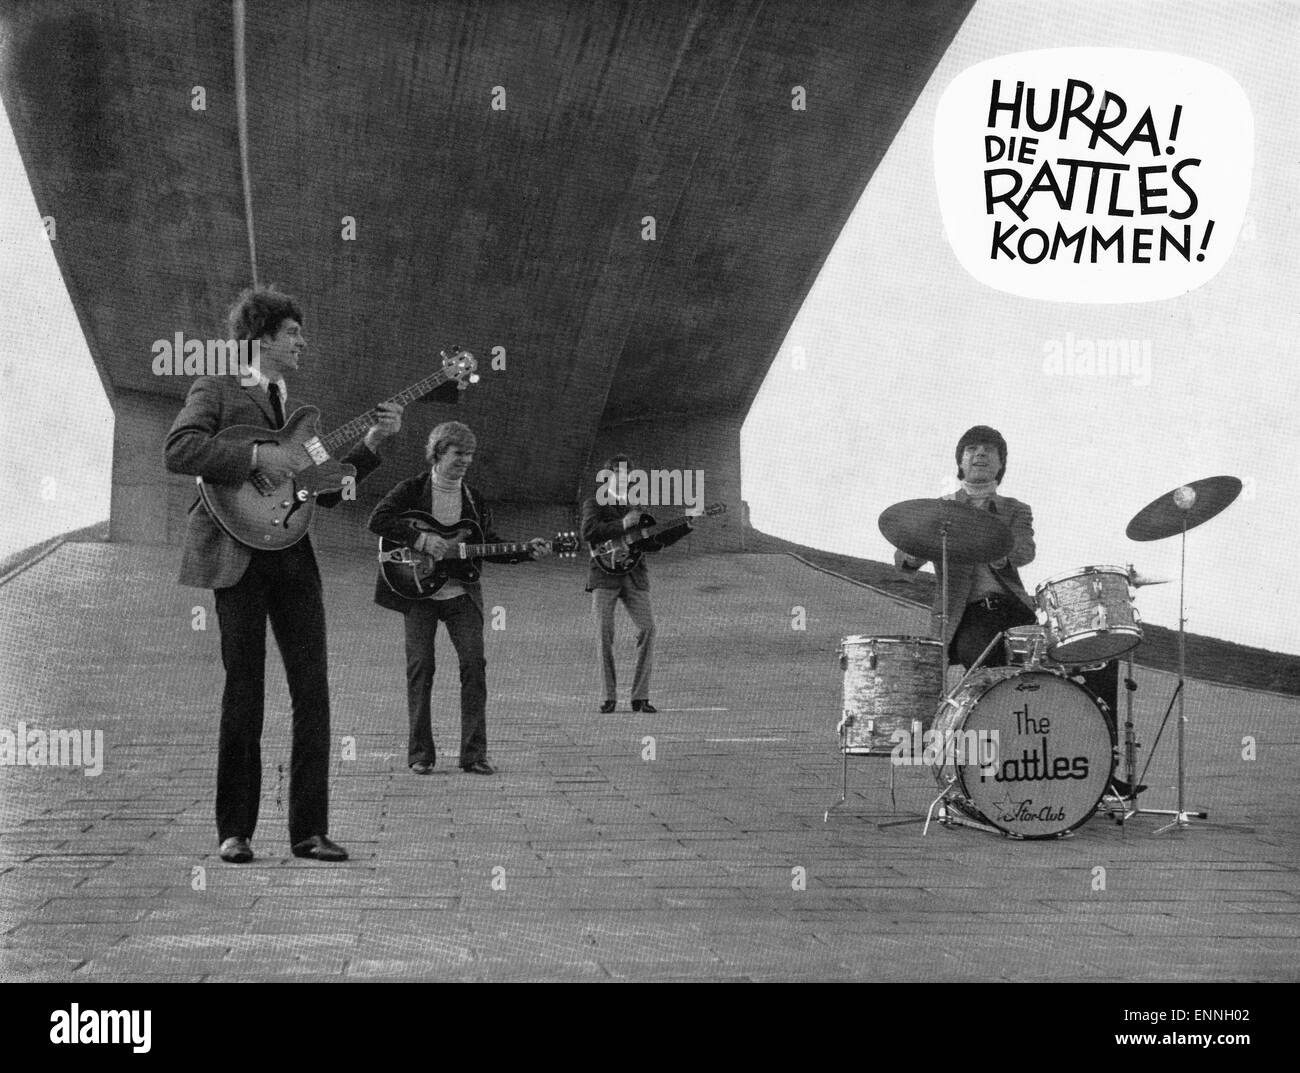 Hurra, die hochets kommen, Deutschland 1966, Regie : Alexander Welbat, acteurs : les hochets Banque D'Images